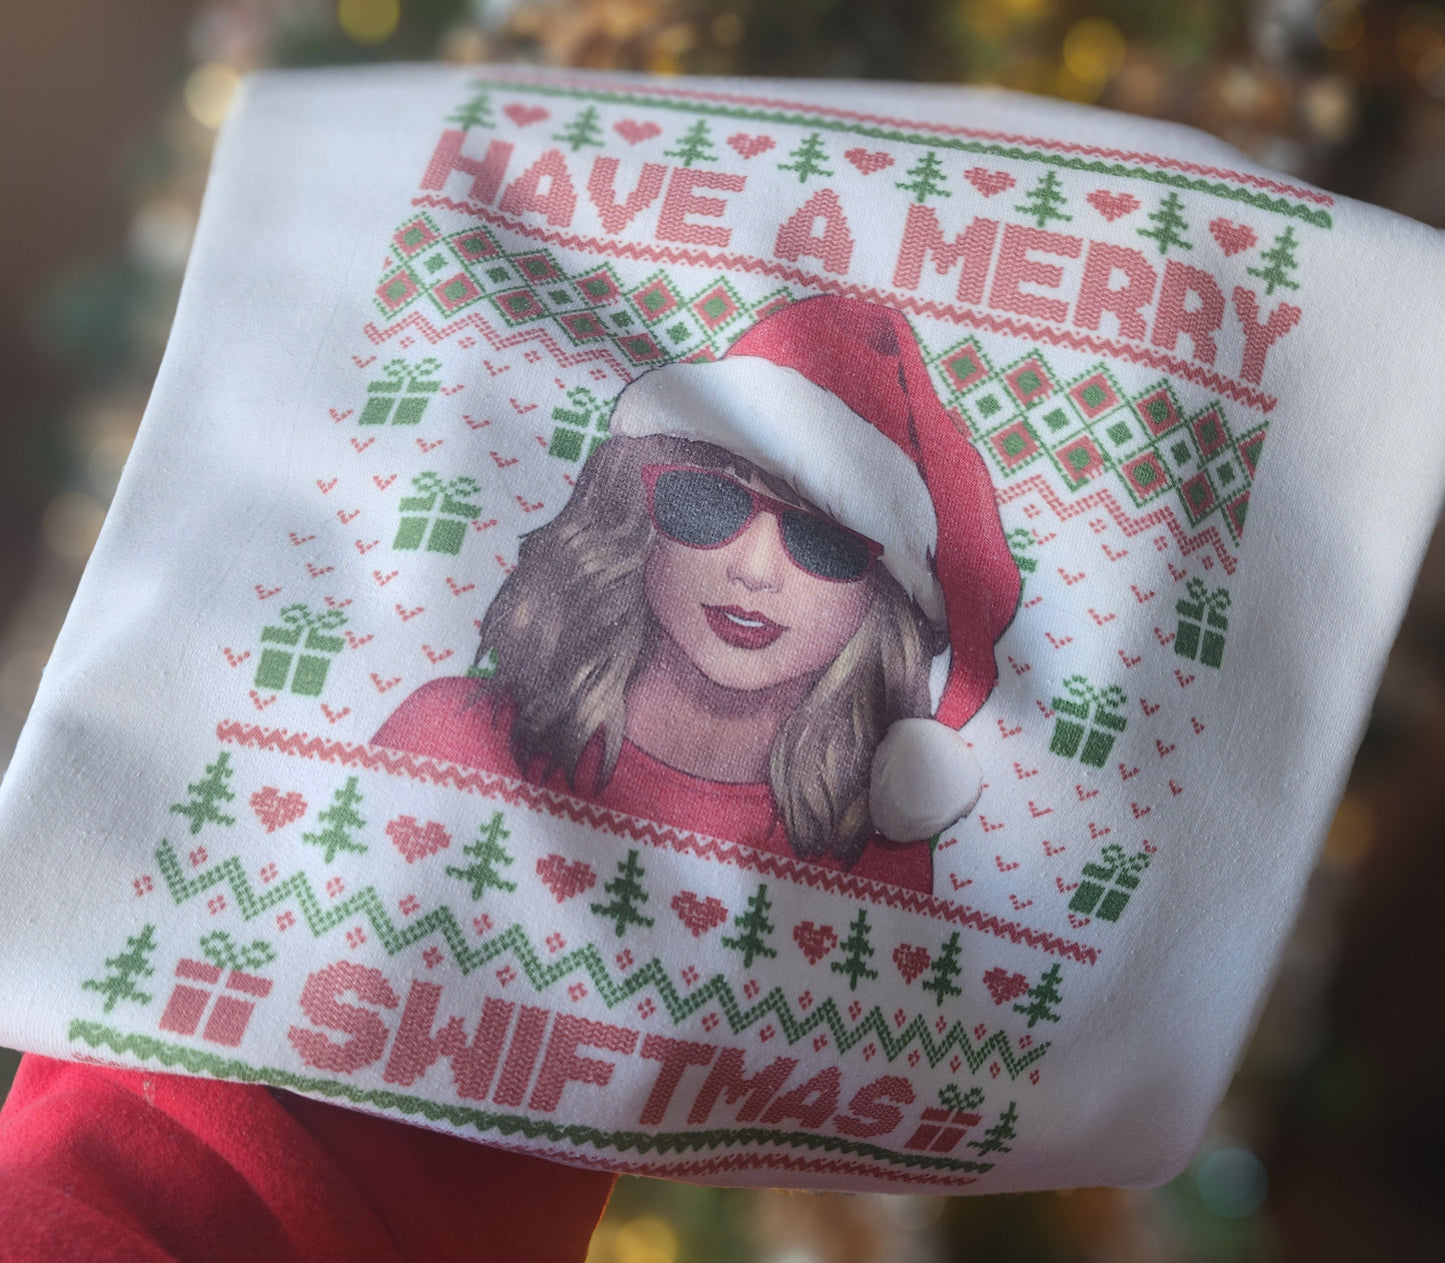 Merry Swiftmas Sweatshirt